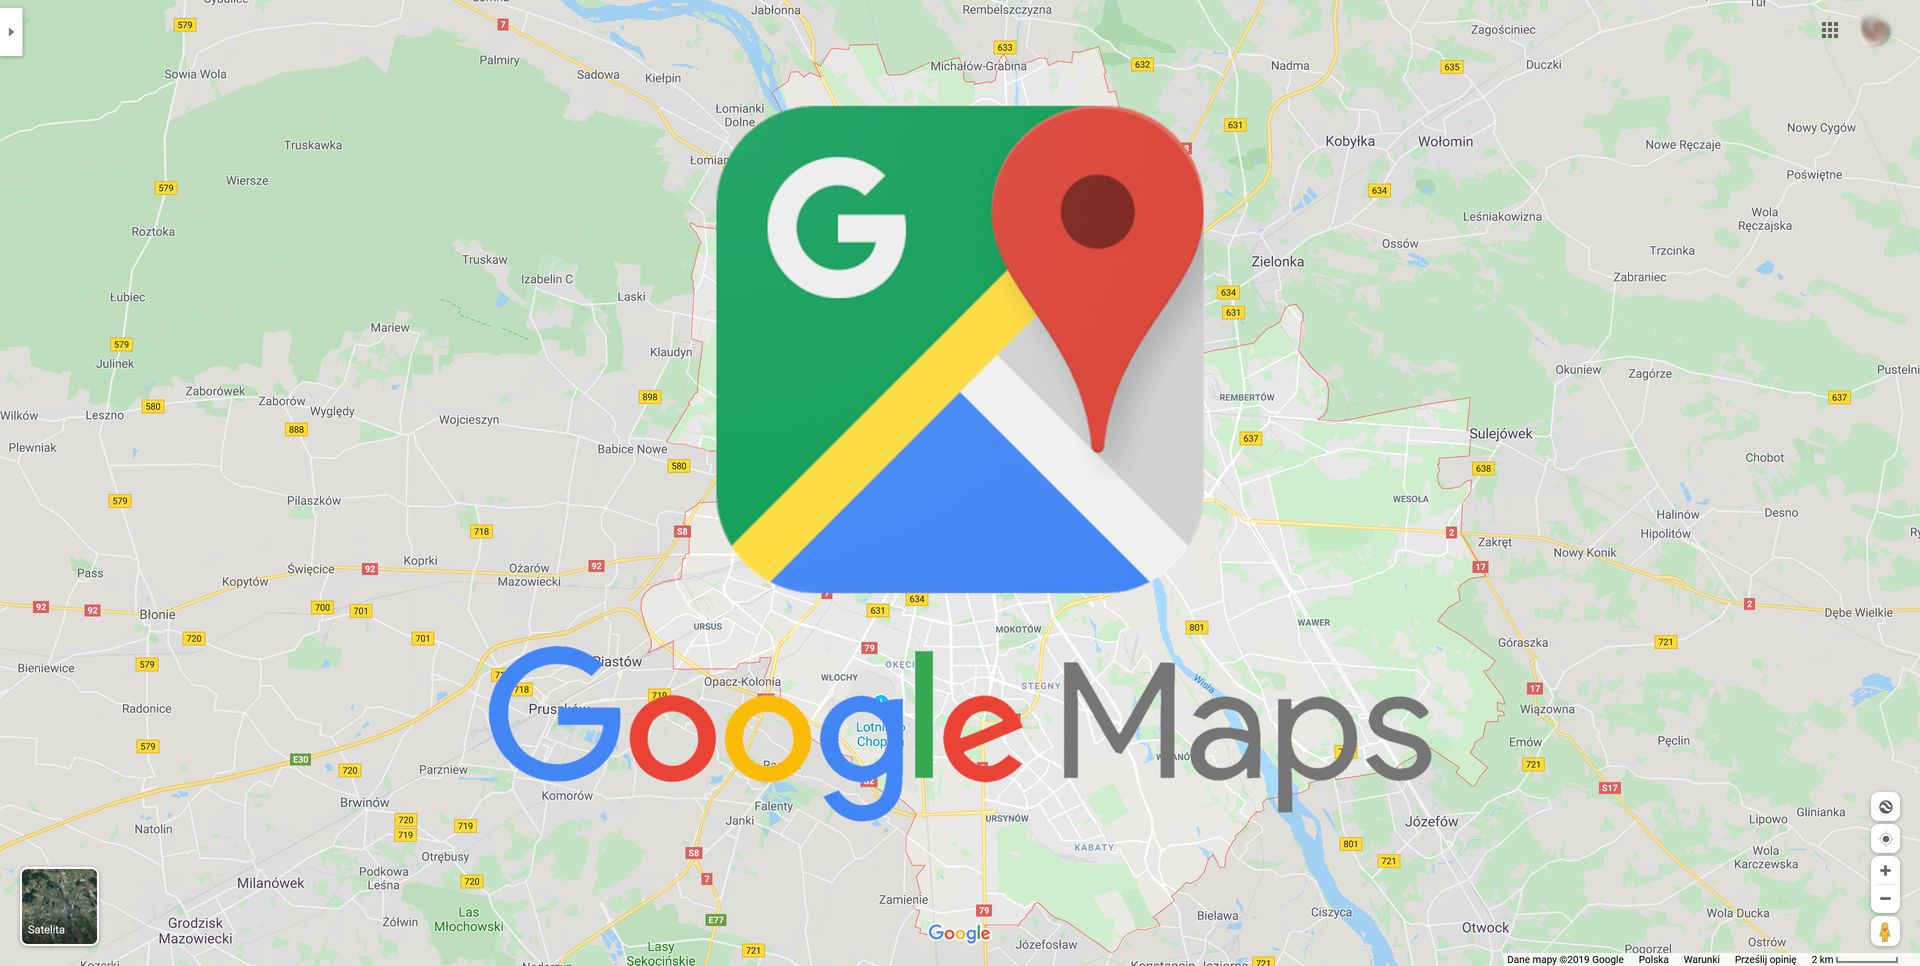 mapy-google-oferuj-wiele-funkcji-o-kt-rych-mogli-cie-nie-wiedzie